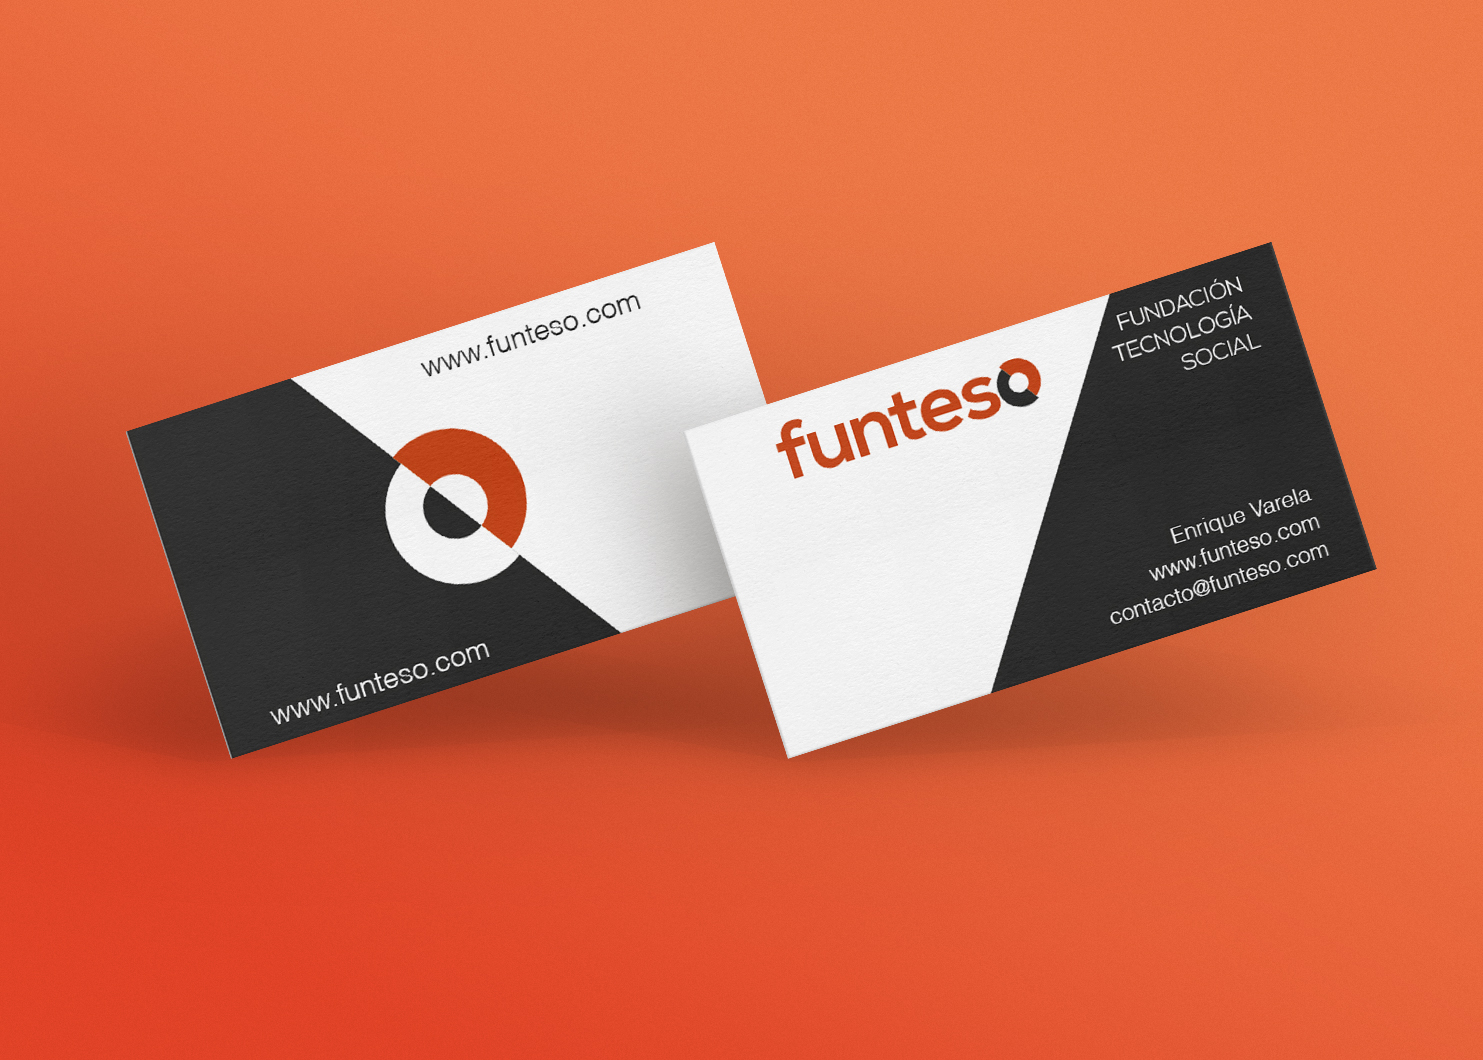 imagen que muestra la tarjetas de visita de FUNTESO como muestra de su identidad corporativa.